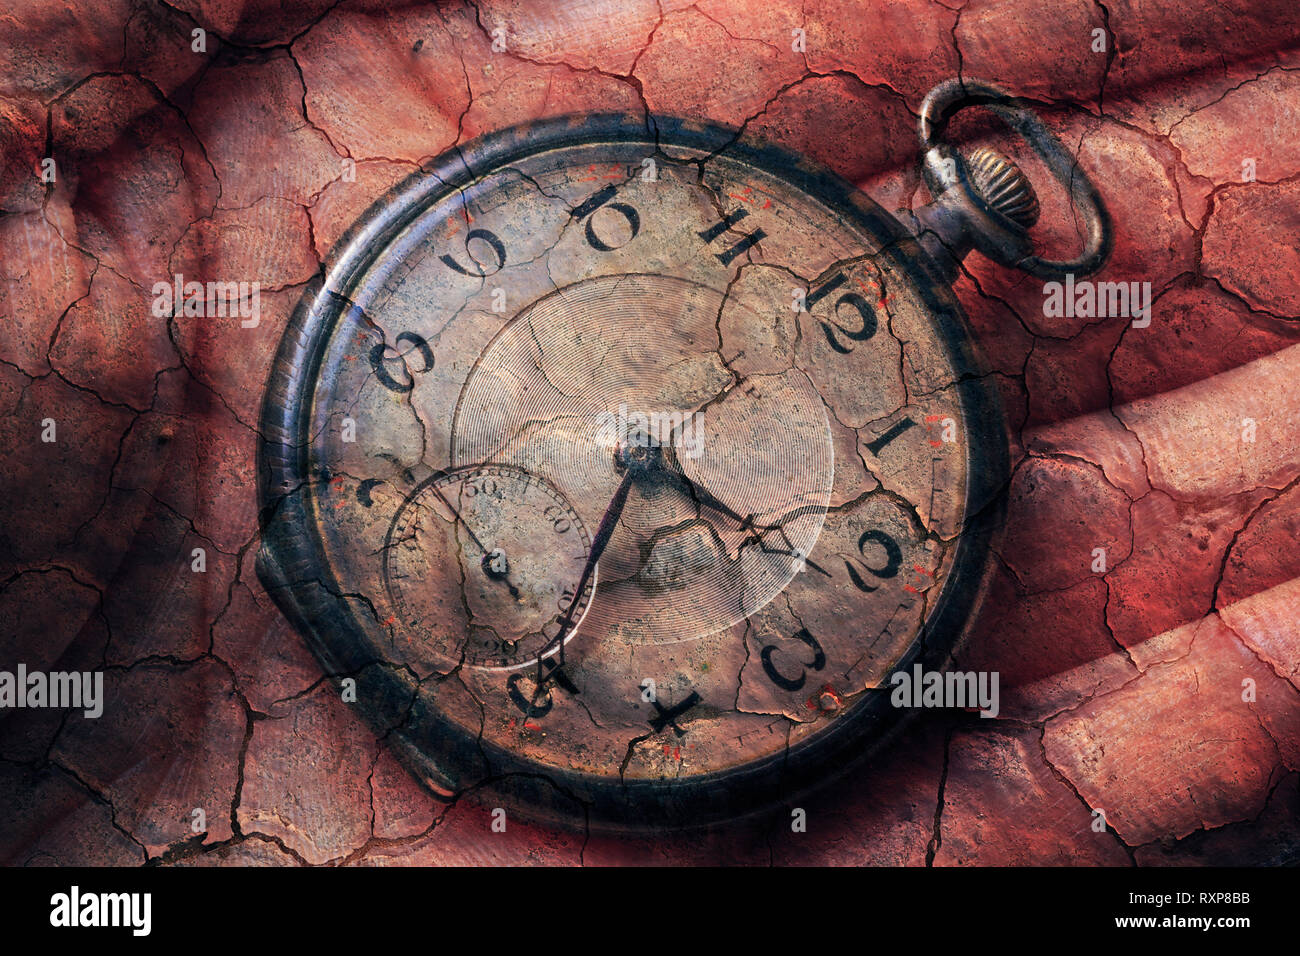 Digital composite de montre de poche dans la main avec l'arrière-plan de la terre craquelée, soulignant l'errance, le passage du temps, le vieillissement, le non-respect des délais, etc. Banque D'Images